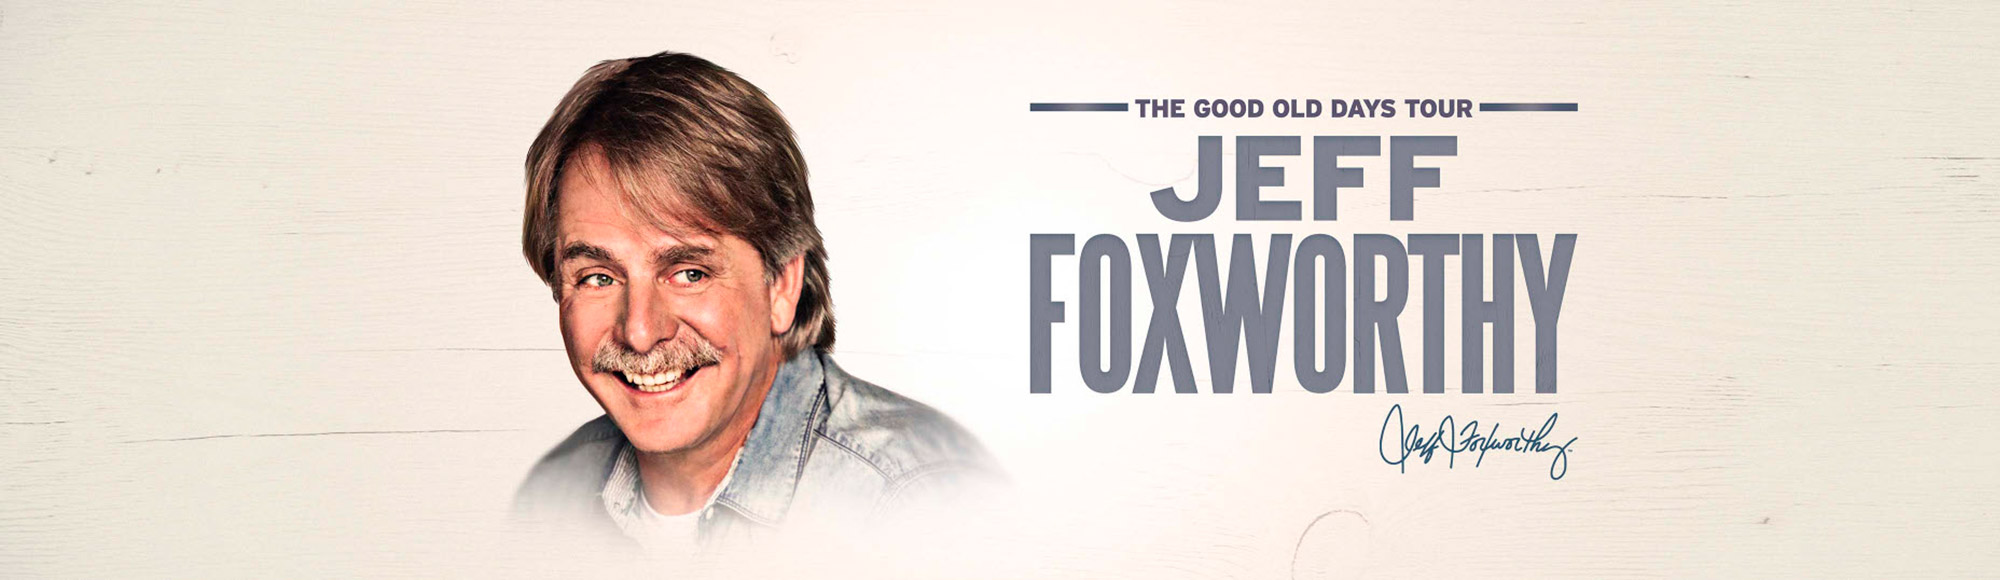 Jeff Foxworthy show